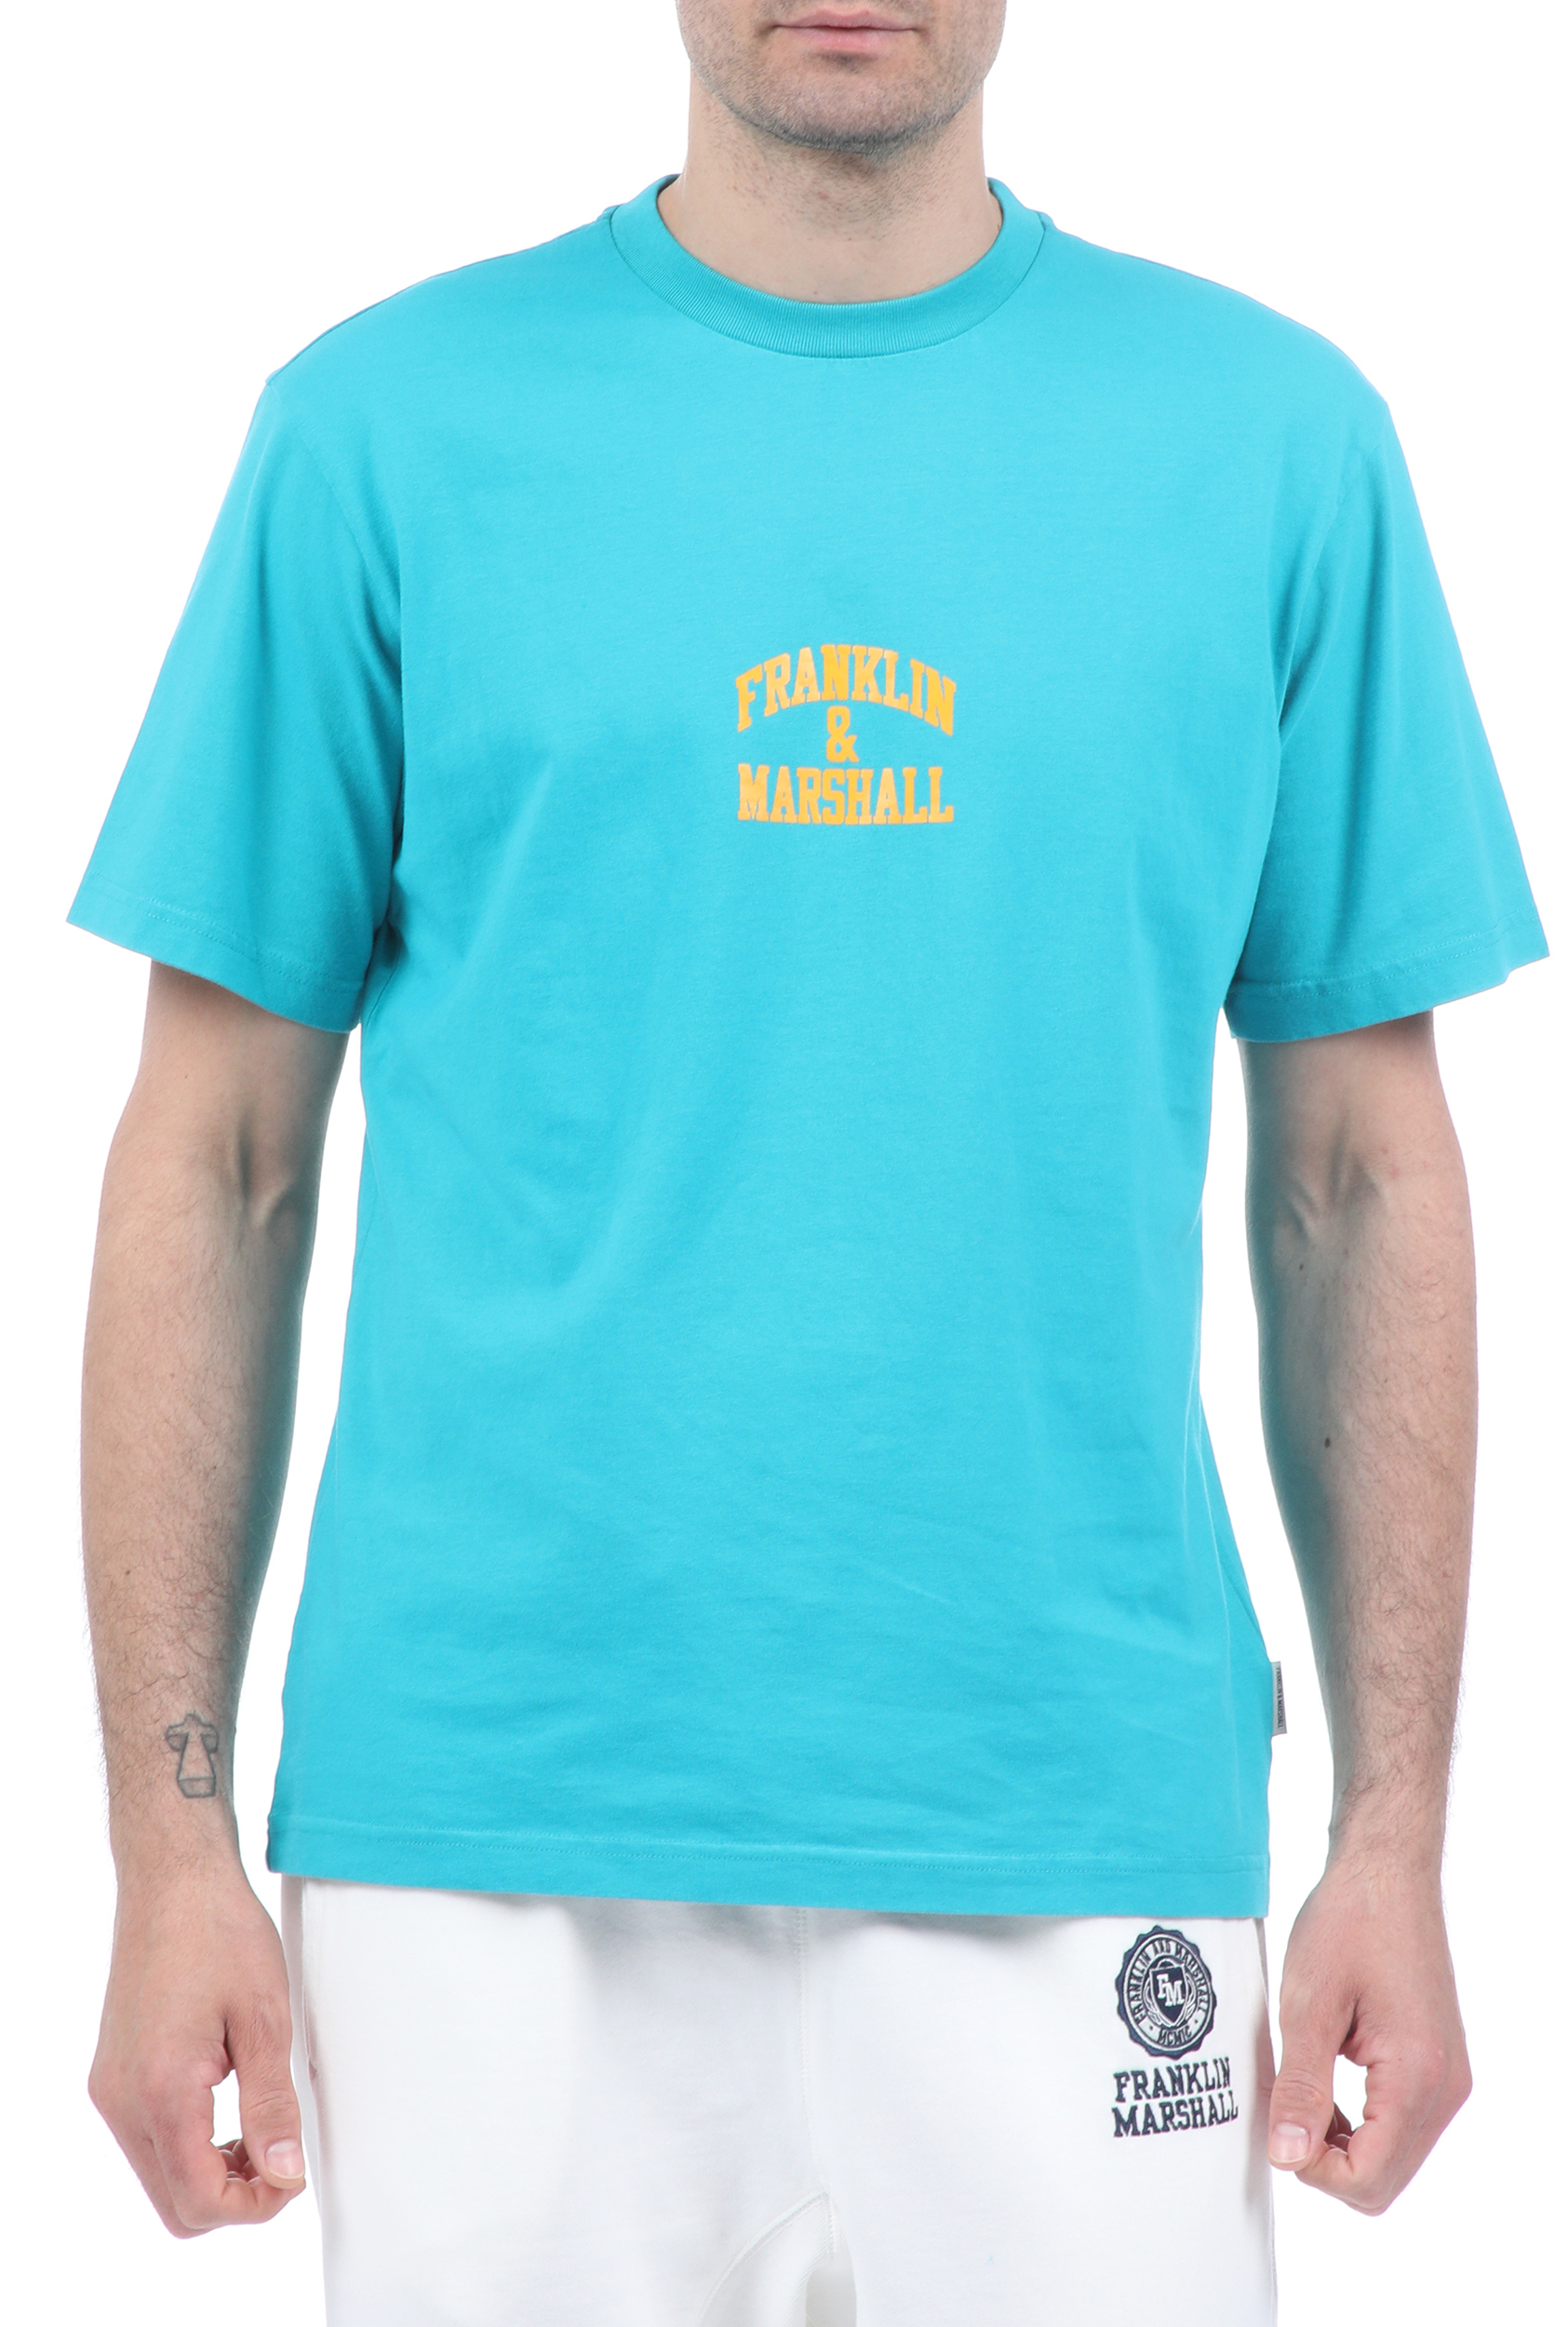 Ανδρικά/Ρούχα/Μπλούζες/Κοντομάνικες FRANKLIN & MARSHALL - Ανδρικό t-shirt FRANKLIN & MARSHALL μπλε